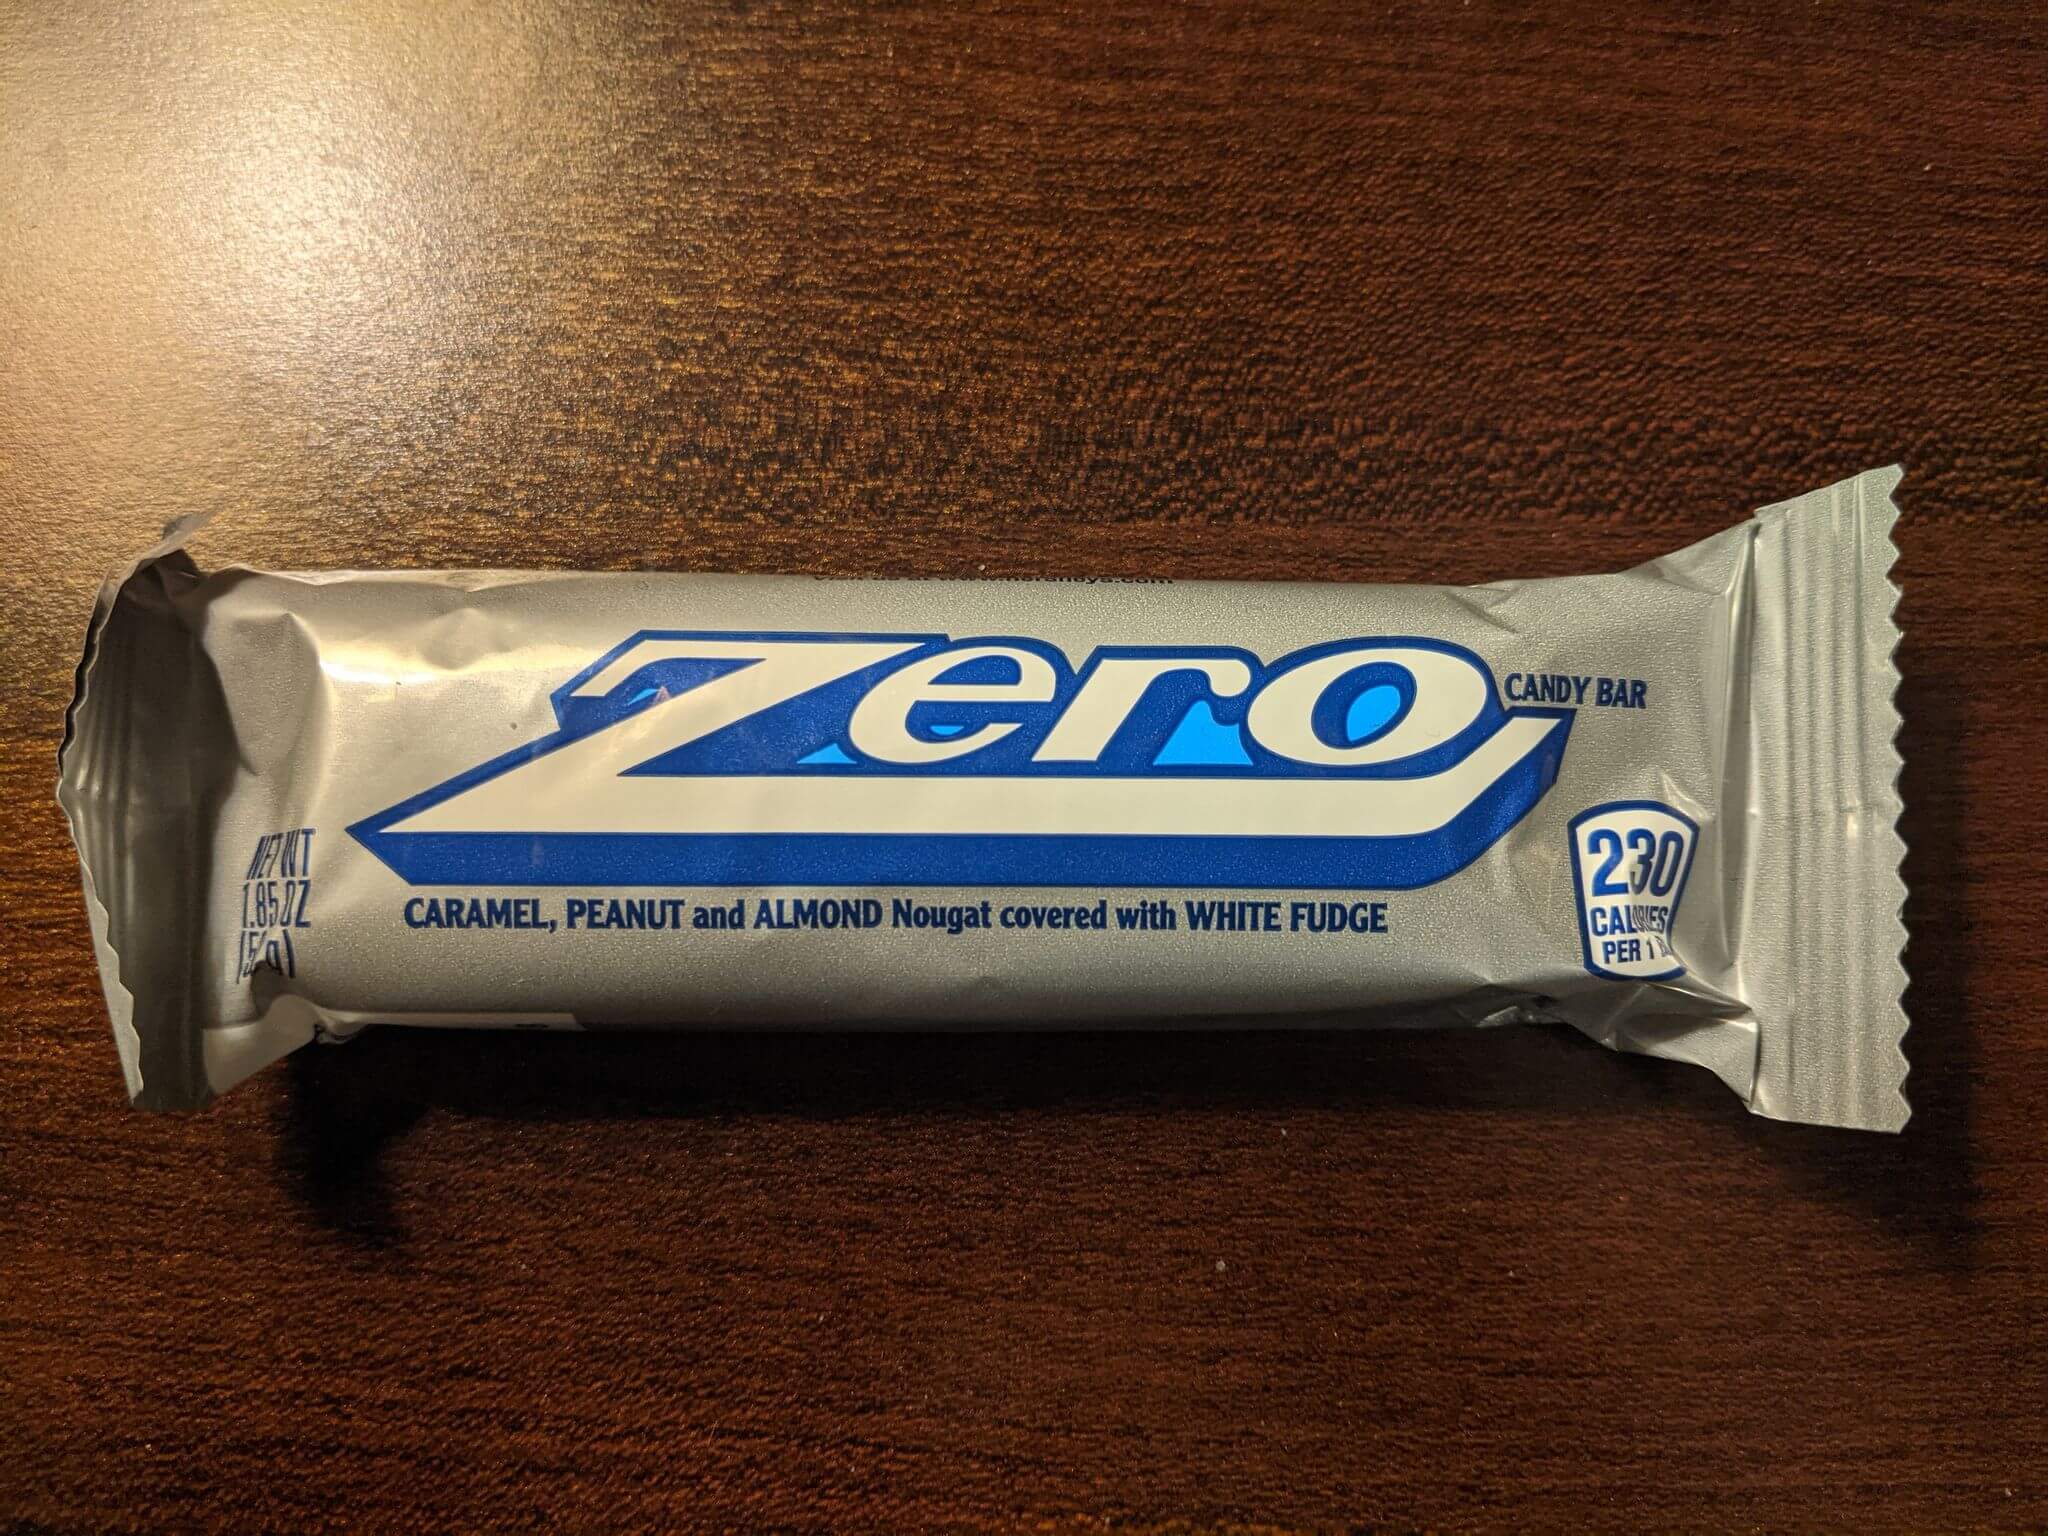 Zero bar